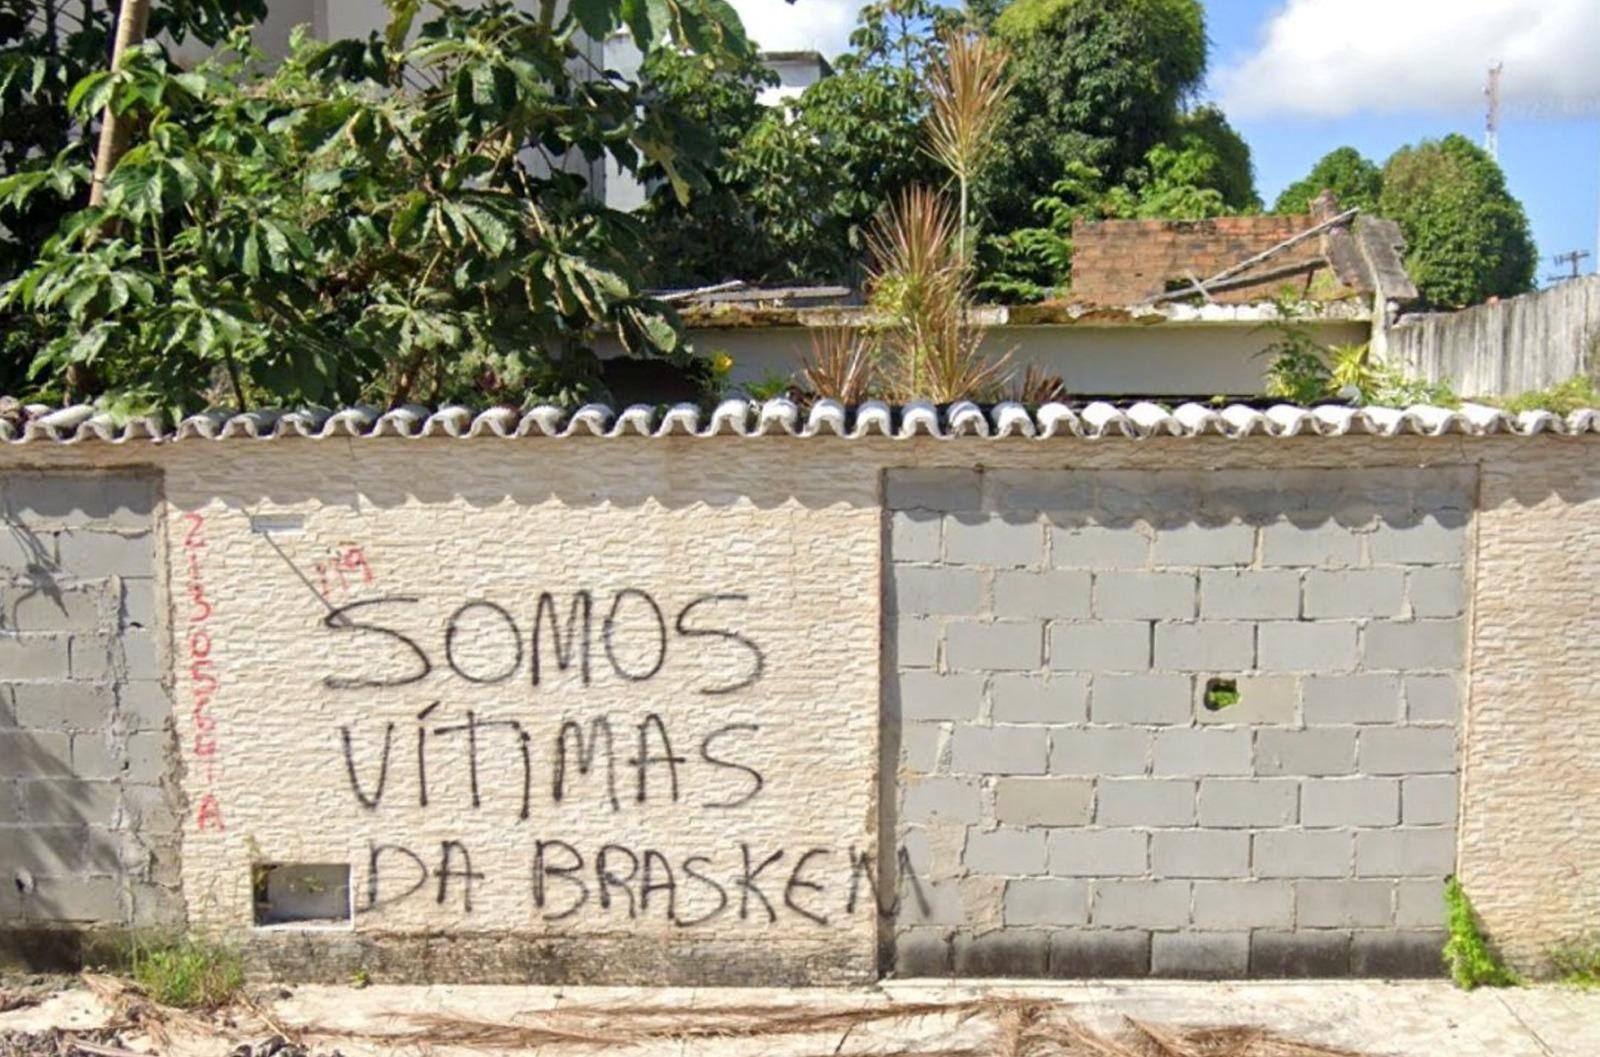 Protesto de moradores em bairro atingido por extração da Braskem, em Maceió. Imagem de arquivo